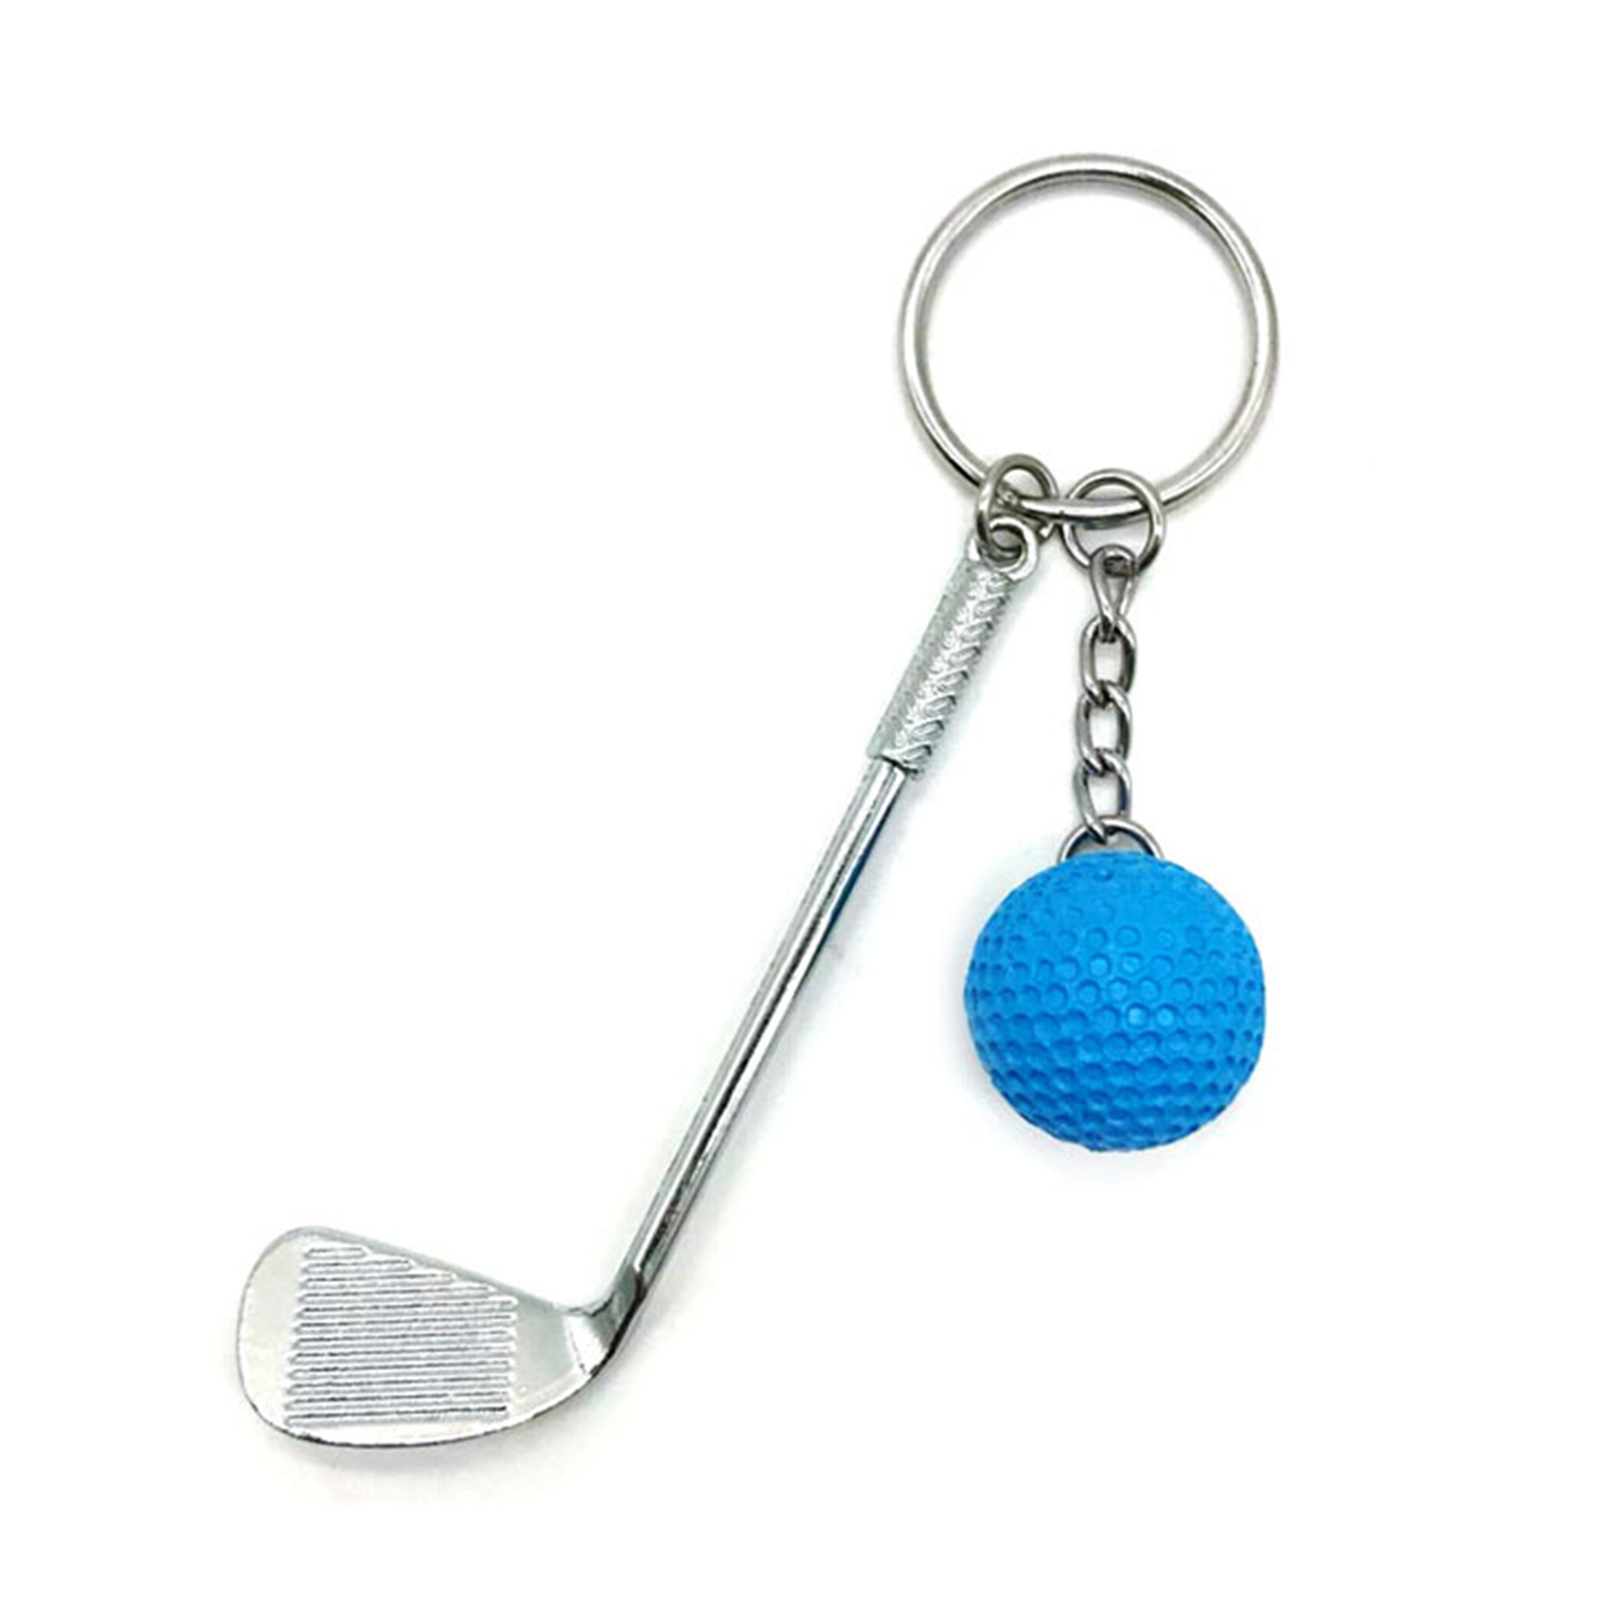 โลหะผสมพวงกุญแจกอล์ฟจี้สีลูกน้ำหนักเบาลูกกอล์ฟจี้พวงกุญแจแฟชั่นพวงกุญแจแยกสำหรับคนรักกีฬา